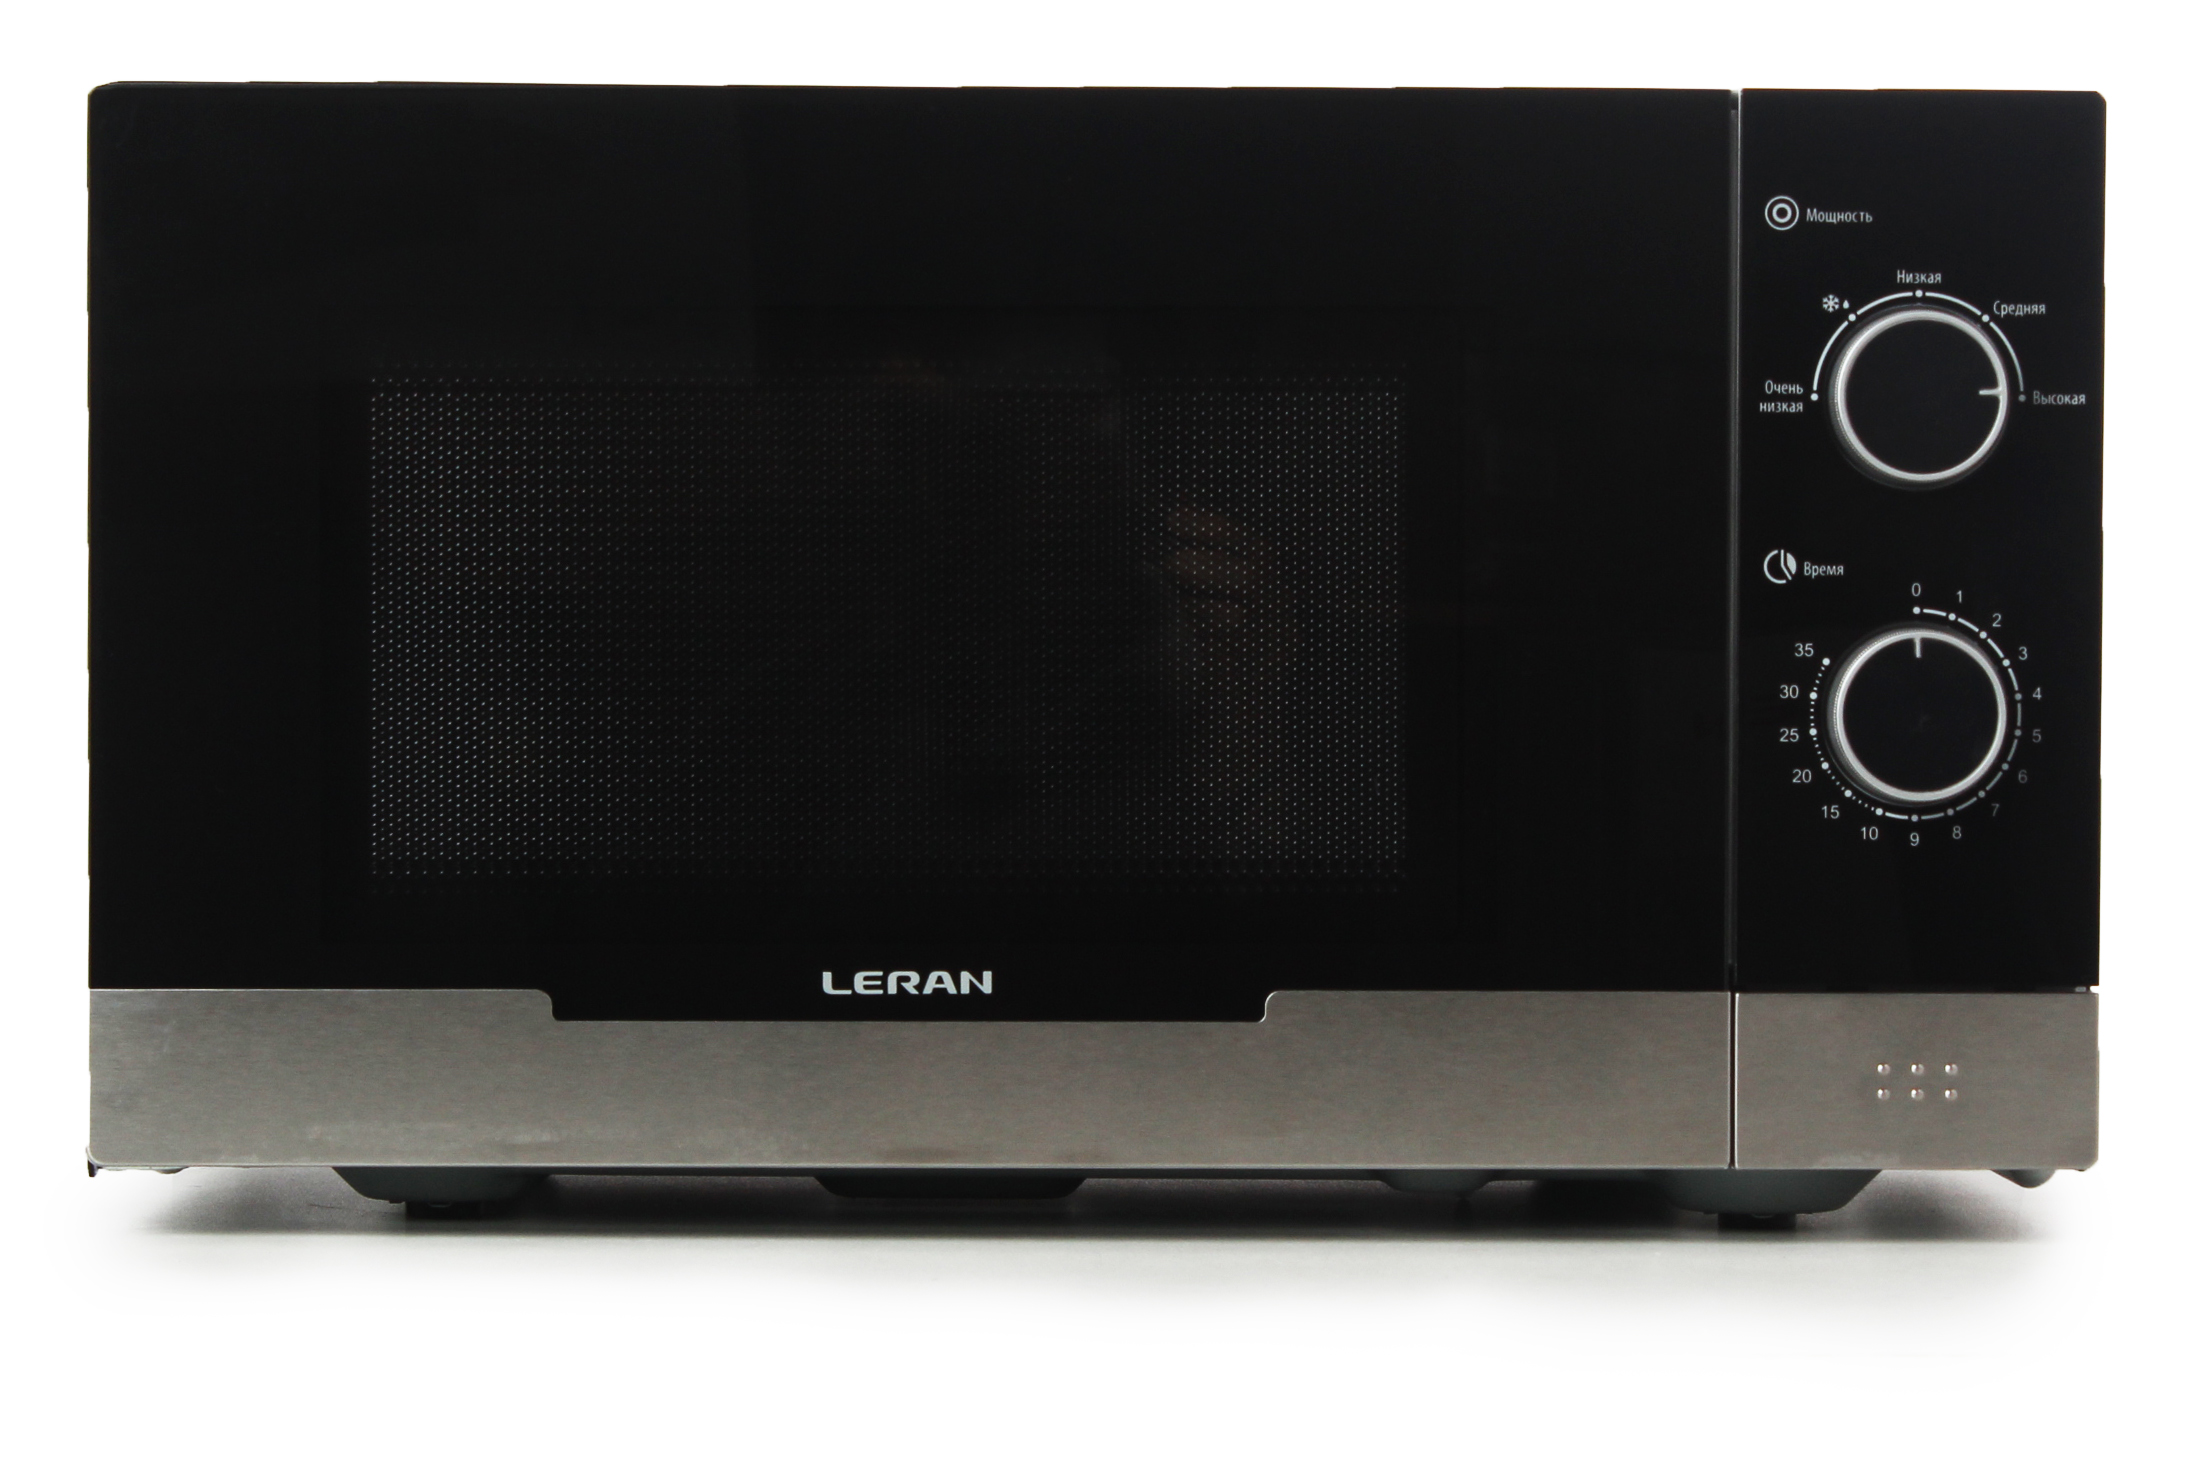 Микроволновая печь Leran Fmo 23m45, цвет черный 438428 - фото 1